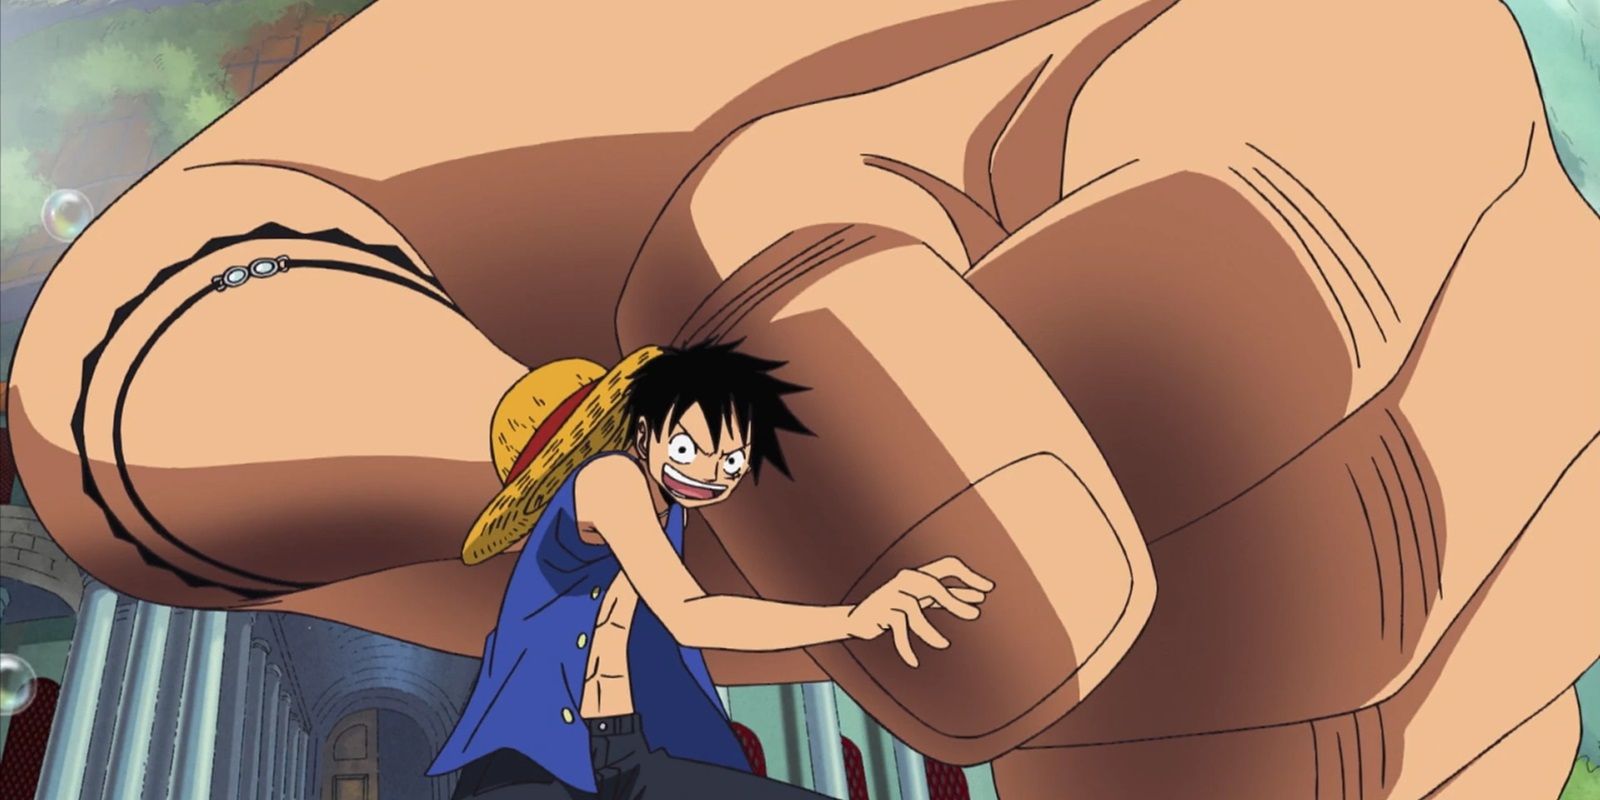 Luffy se preparando para atacar usando a técnica Gear 3 em One Piece com um braço enorme